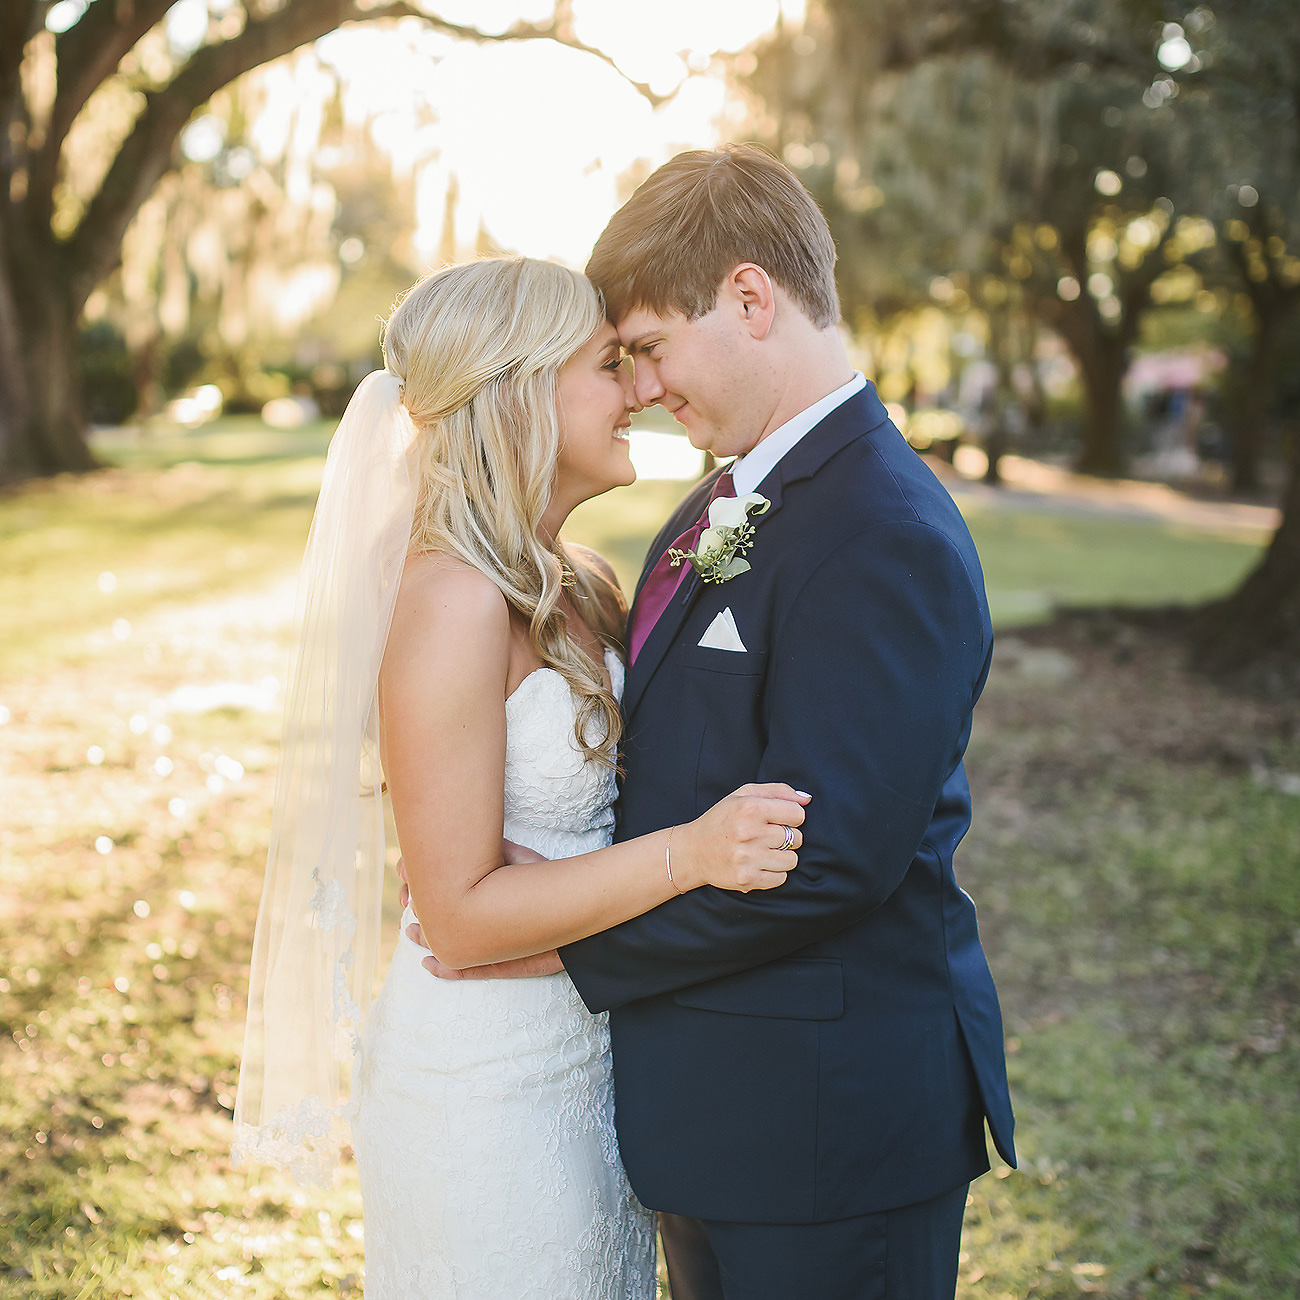 New Orleans Audubon Gardens and Tea Room Wedding Photographer | Lexie & Cade